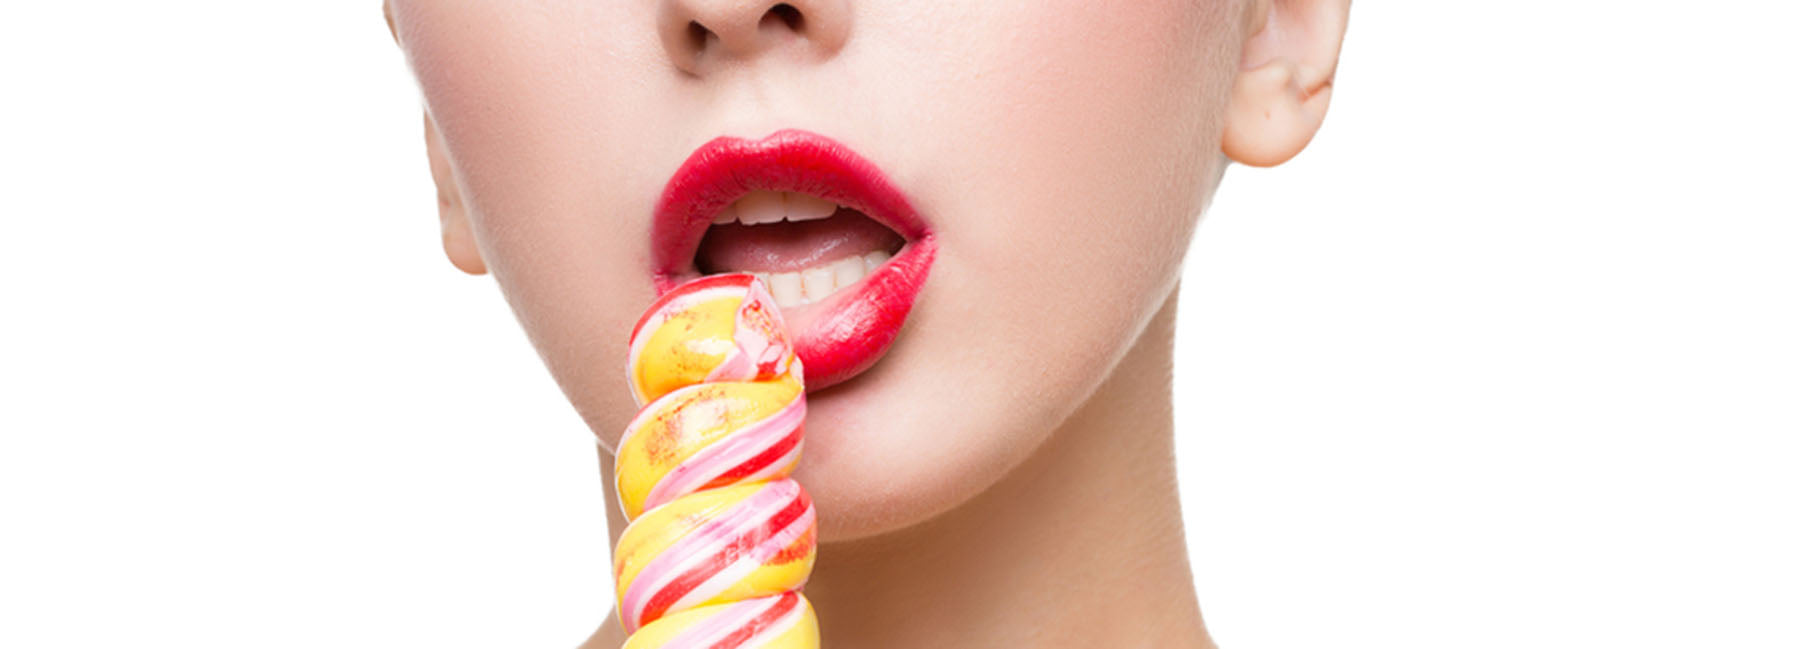 Oral Sex: Taste Better, Enjoy More